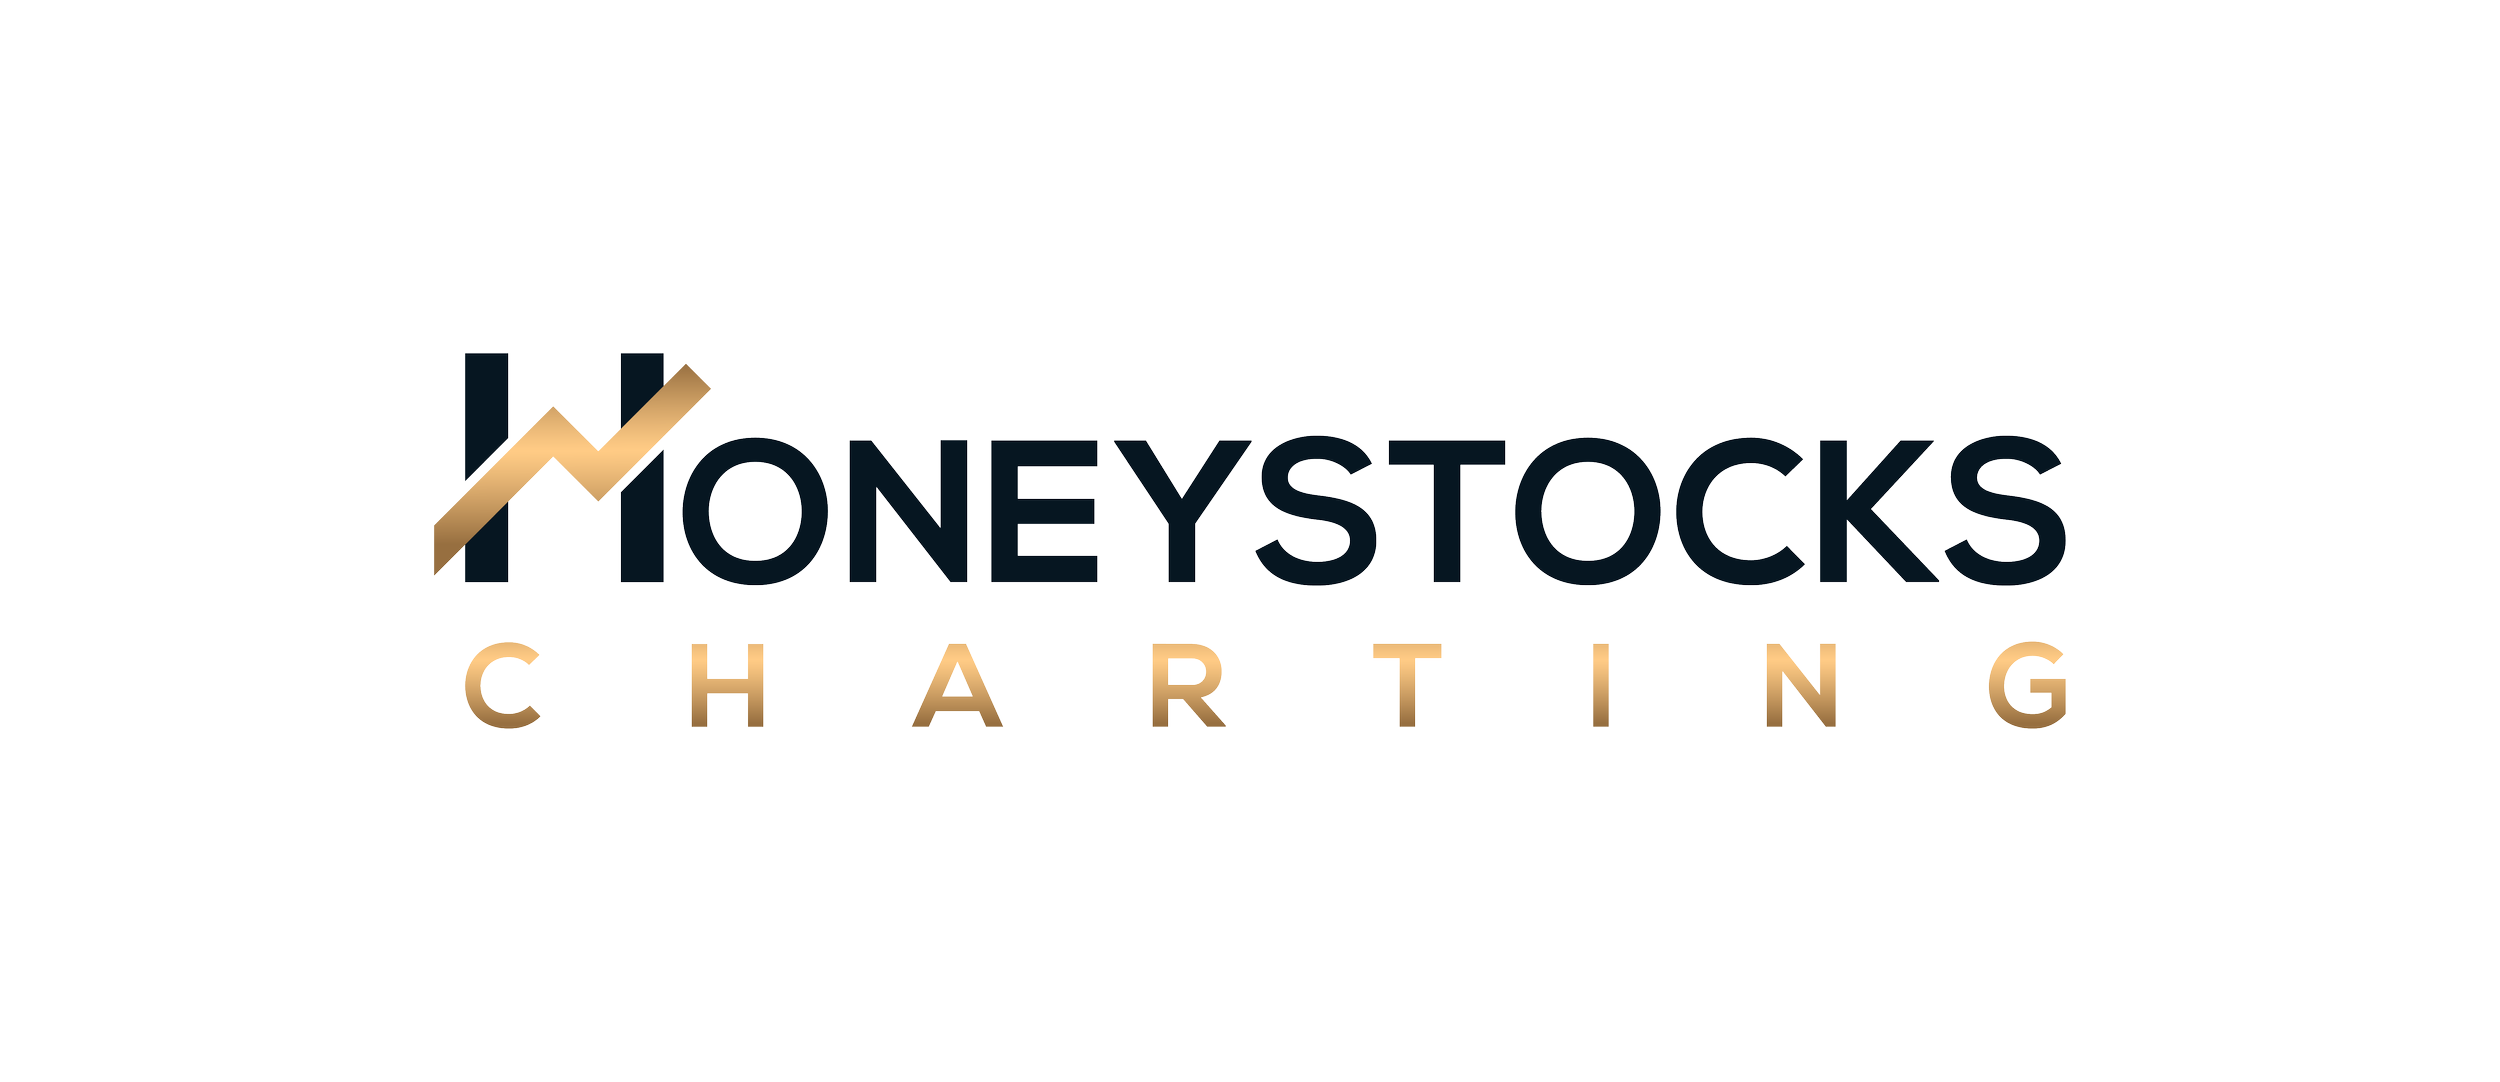 Honeystocks Charting Research